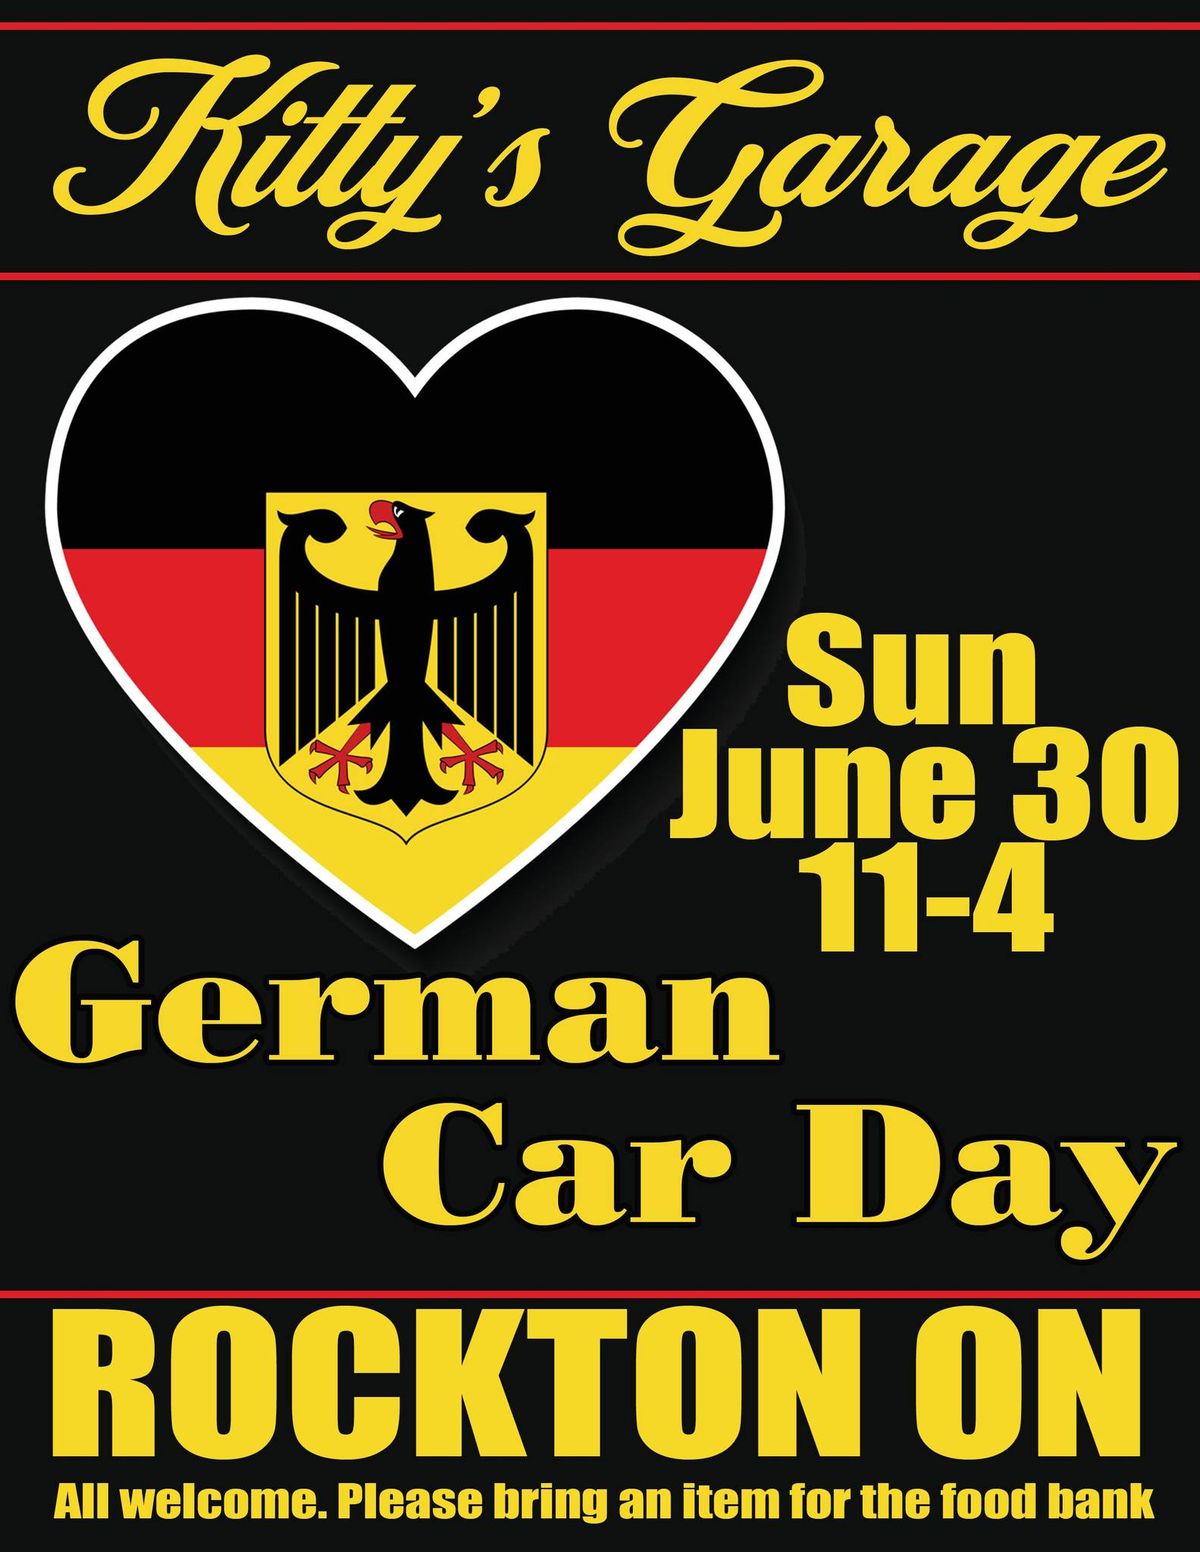 Kitty's Garage German Car Day